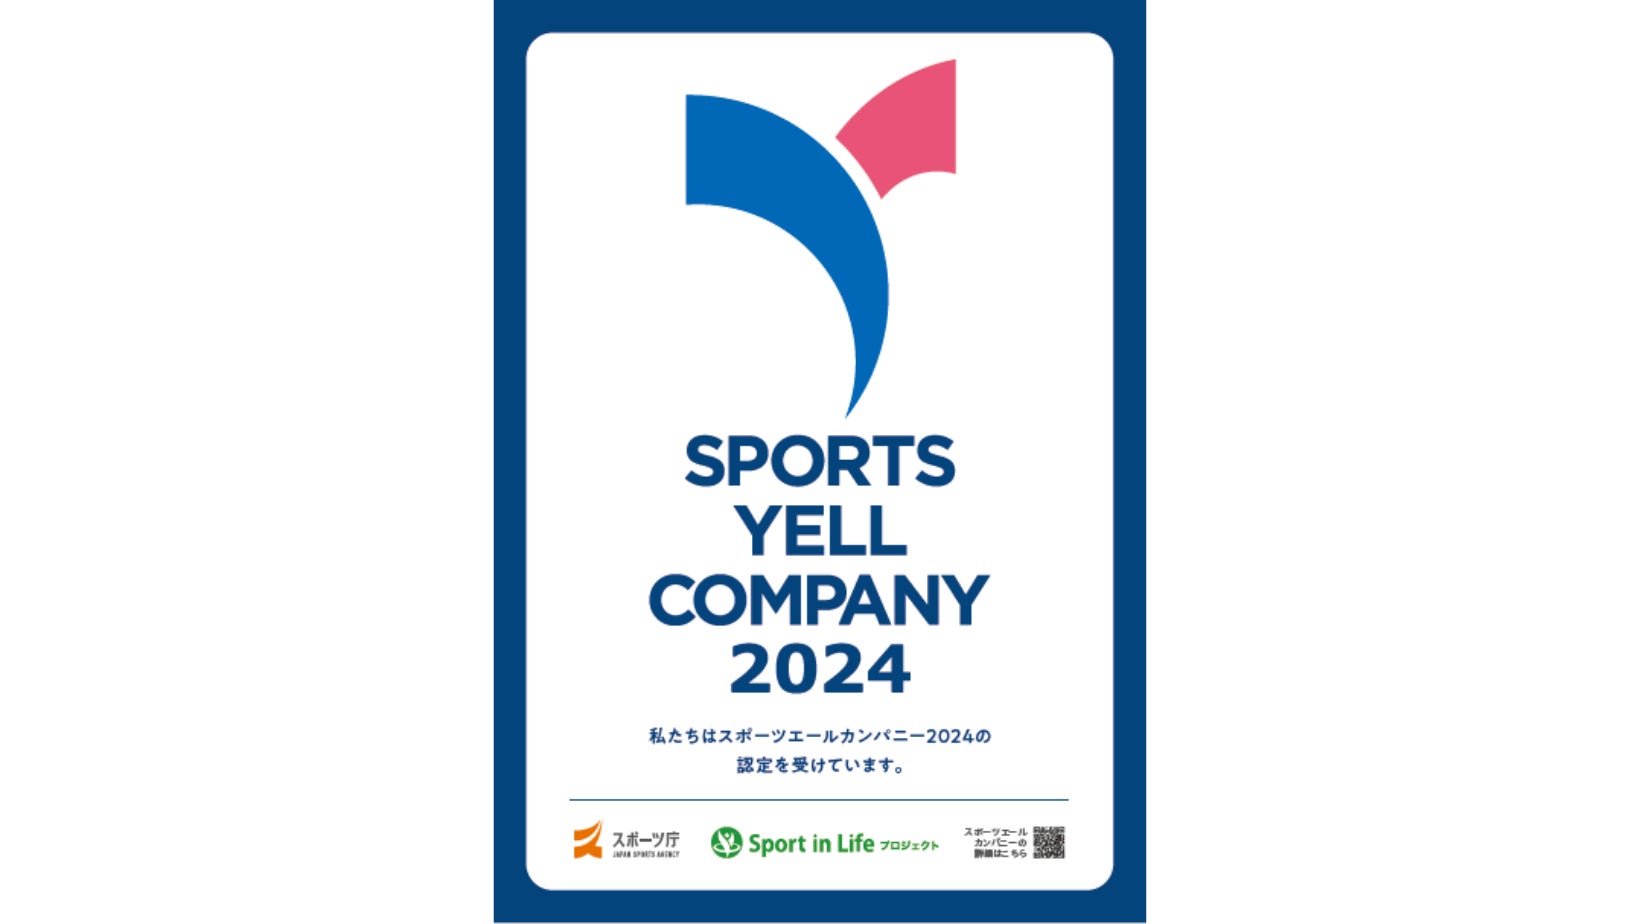 ProVision、スポーツ庁「スポーツエールカンパニー2024」に初認定